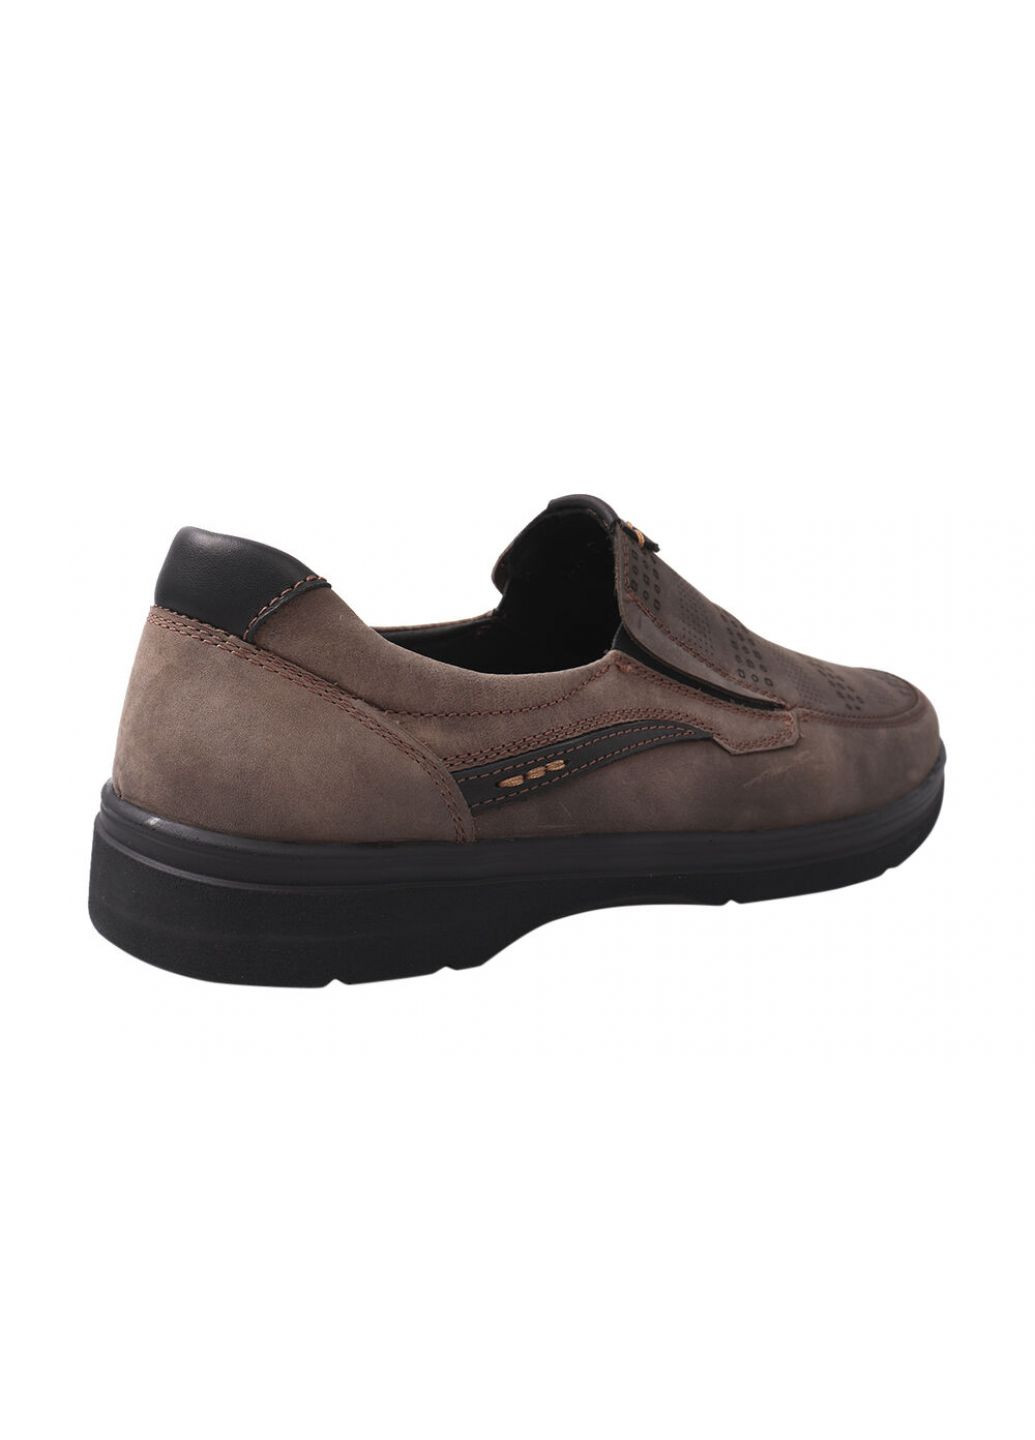 Туфлі чоловічі з натуральної шкіри (нубук), на низькому ходу, колір Визон, Vadrus 330-21dtc (257438386)